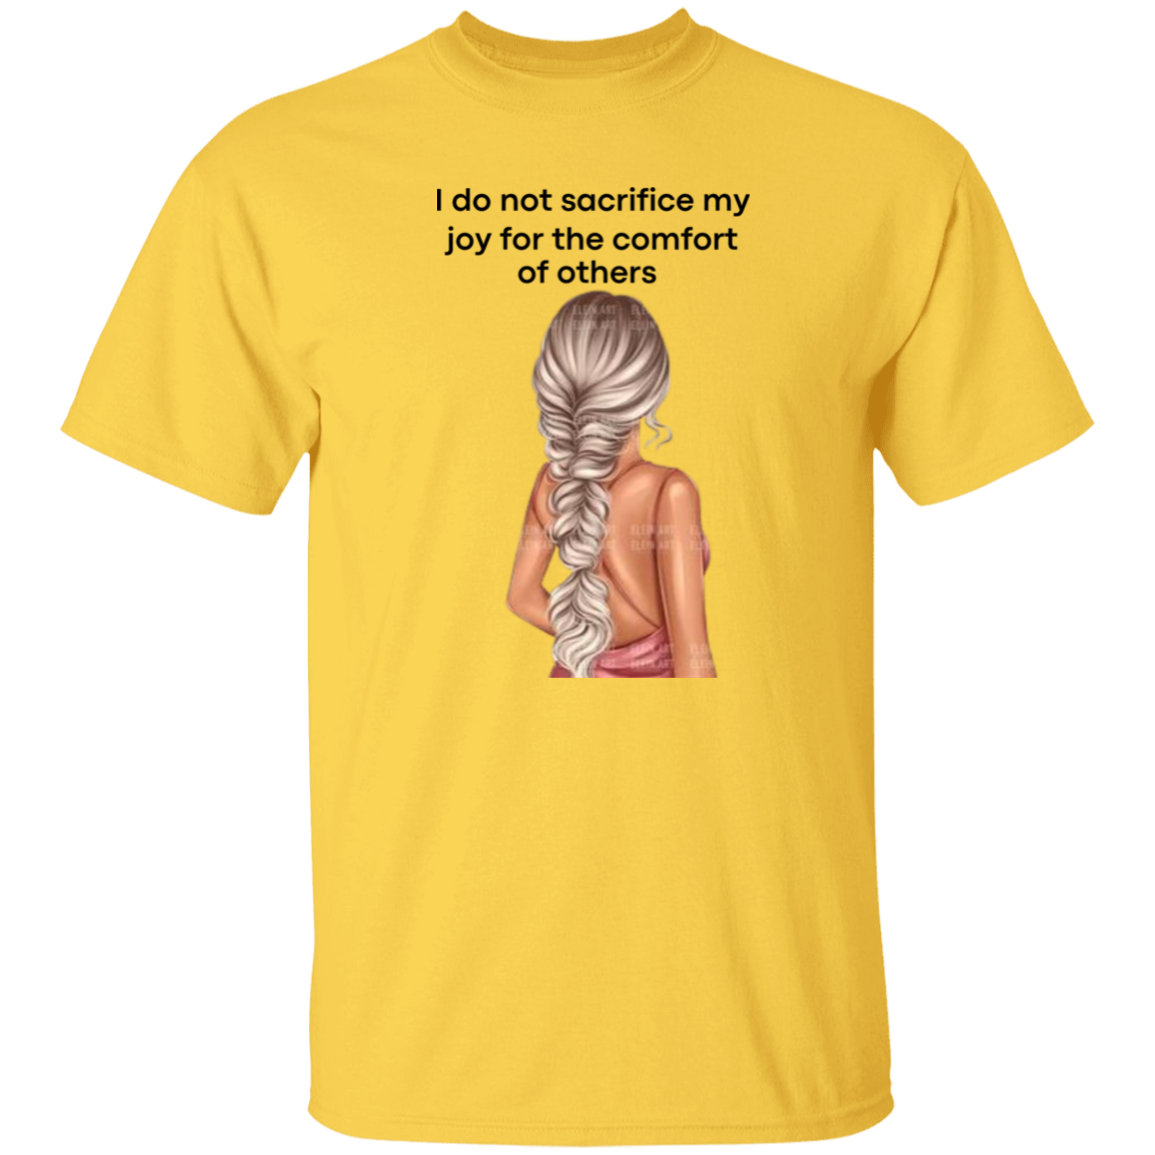 I do not sacrifice my joy 5.3 oz. T-Shirt